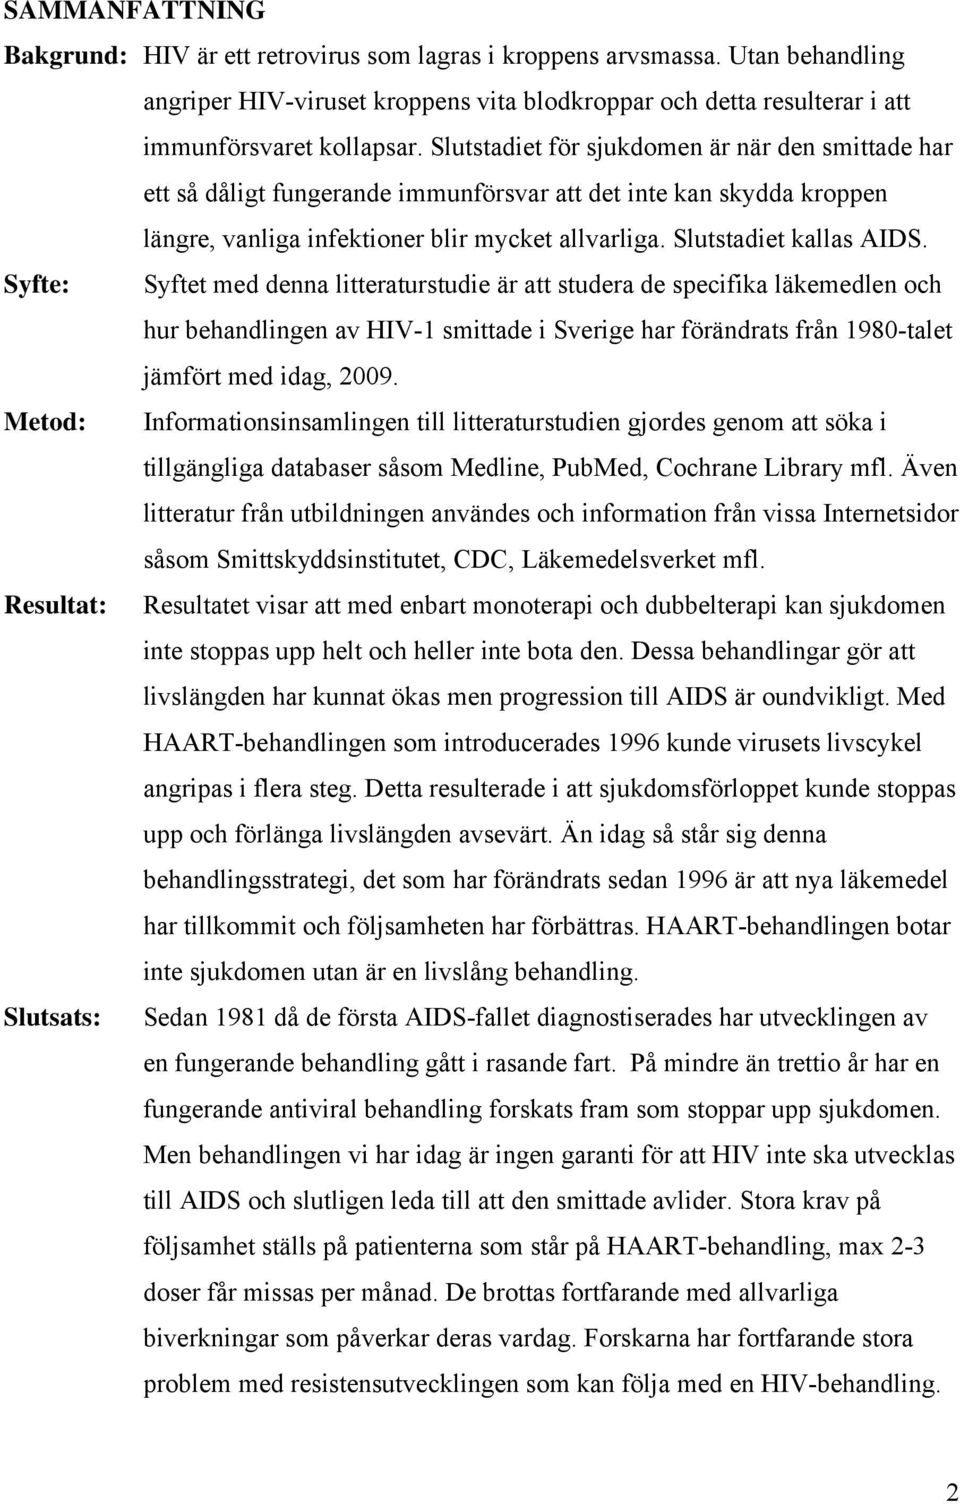 Syfte: Syftet med denna litteraturstudie är att studera de specifika läkemedlen och hur behandlingen av HIV-1 smittade i Sverige har förändrats från 1980-talet jämfört med idag, 2009.